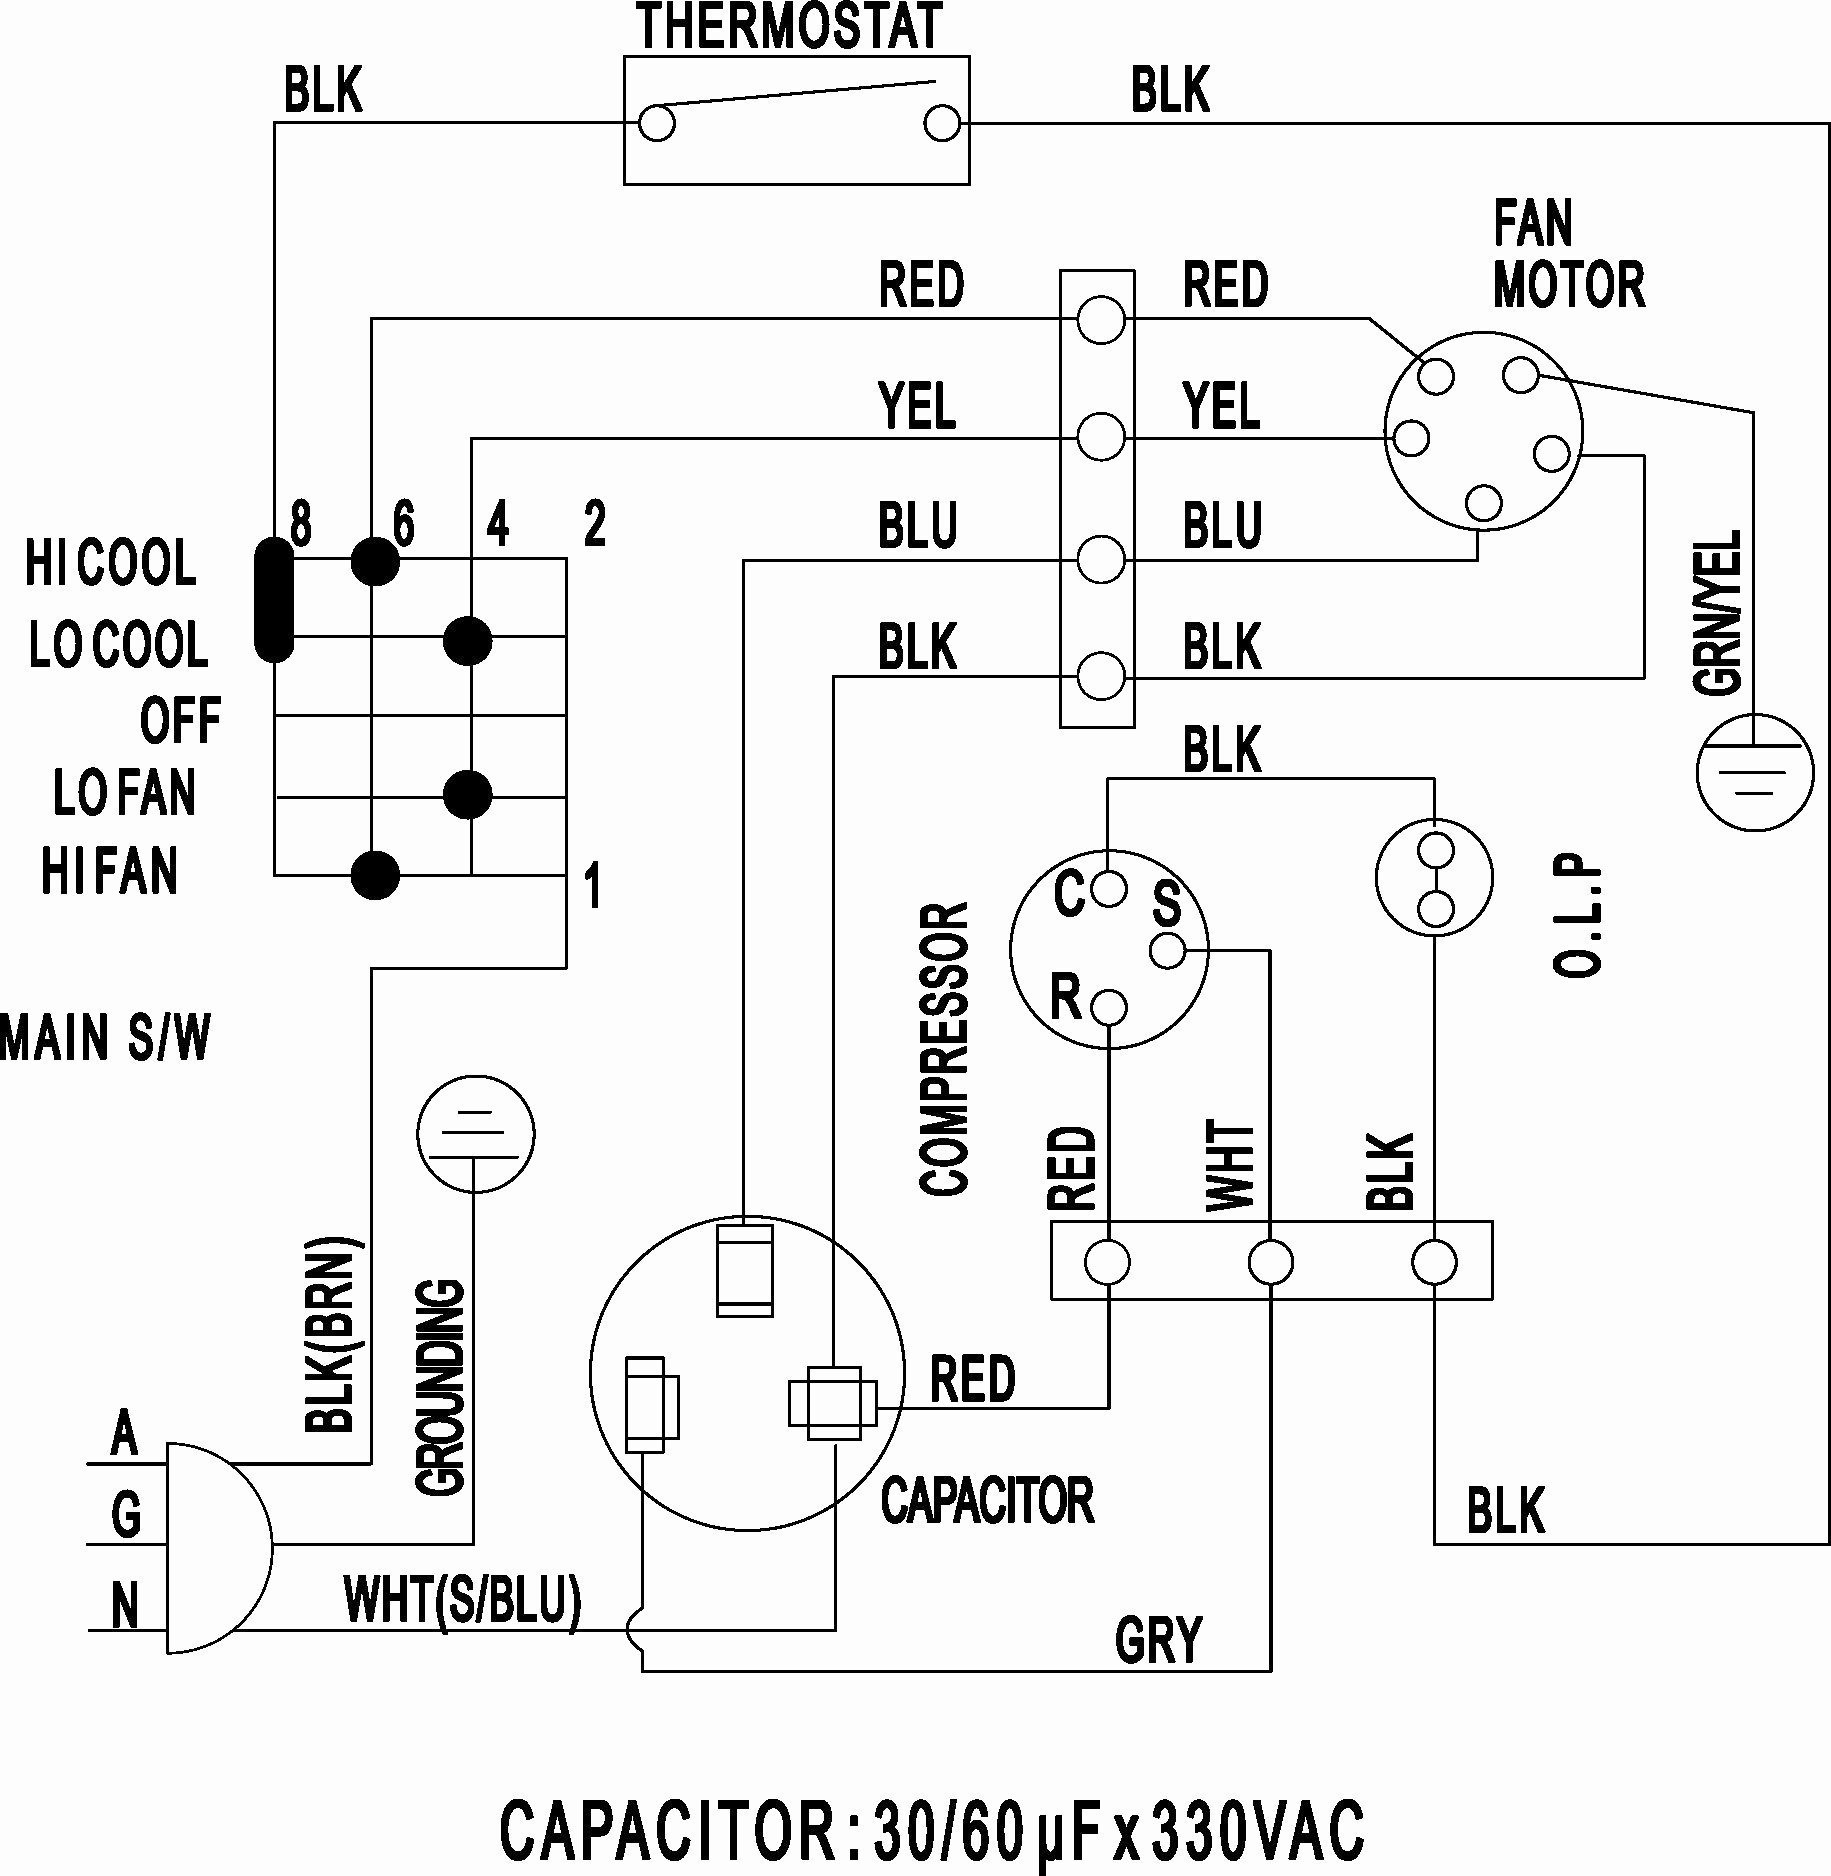 Compressor Wiring Diagram Compressor Wiring Diagram Wiring Diagram